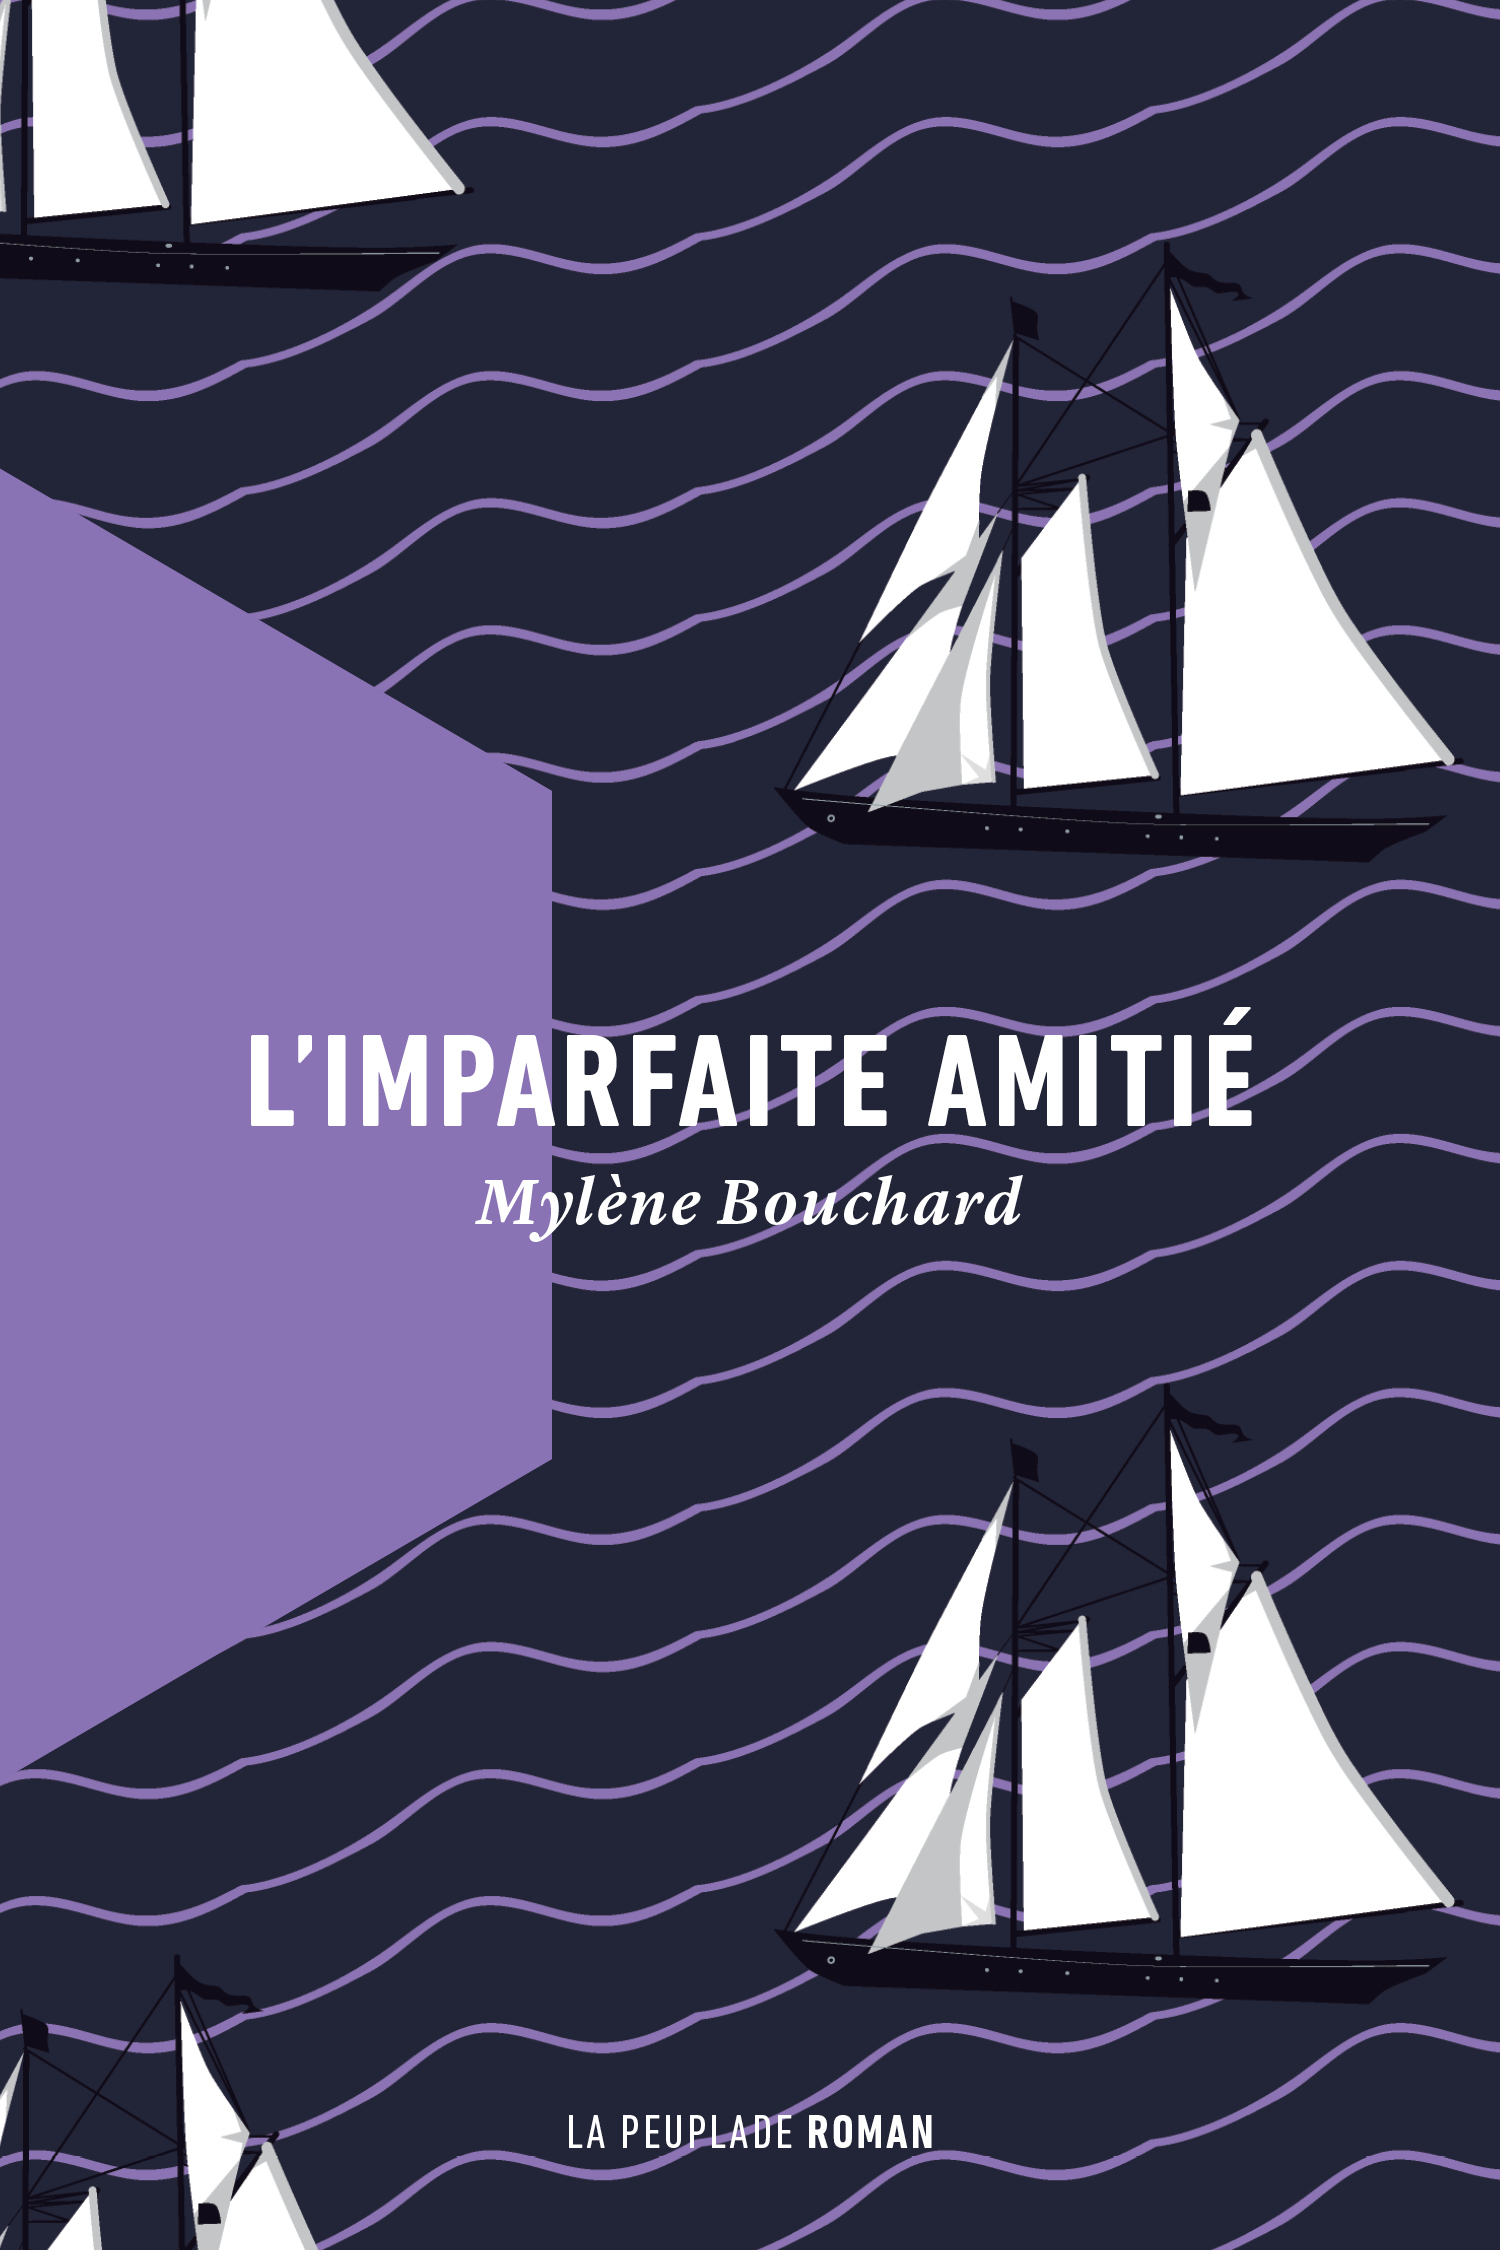 lp2017-imparfaiteamitie-cover-161201_0